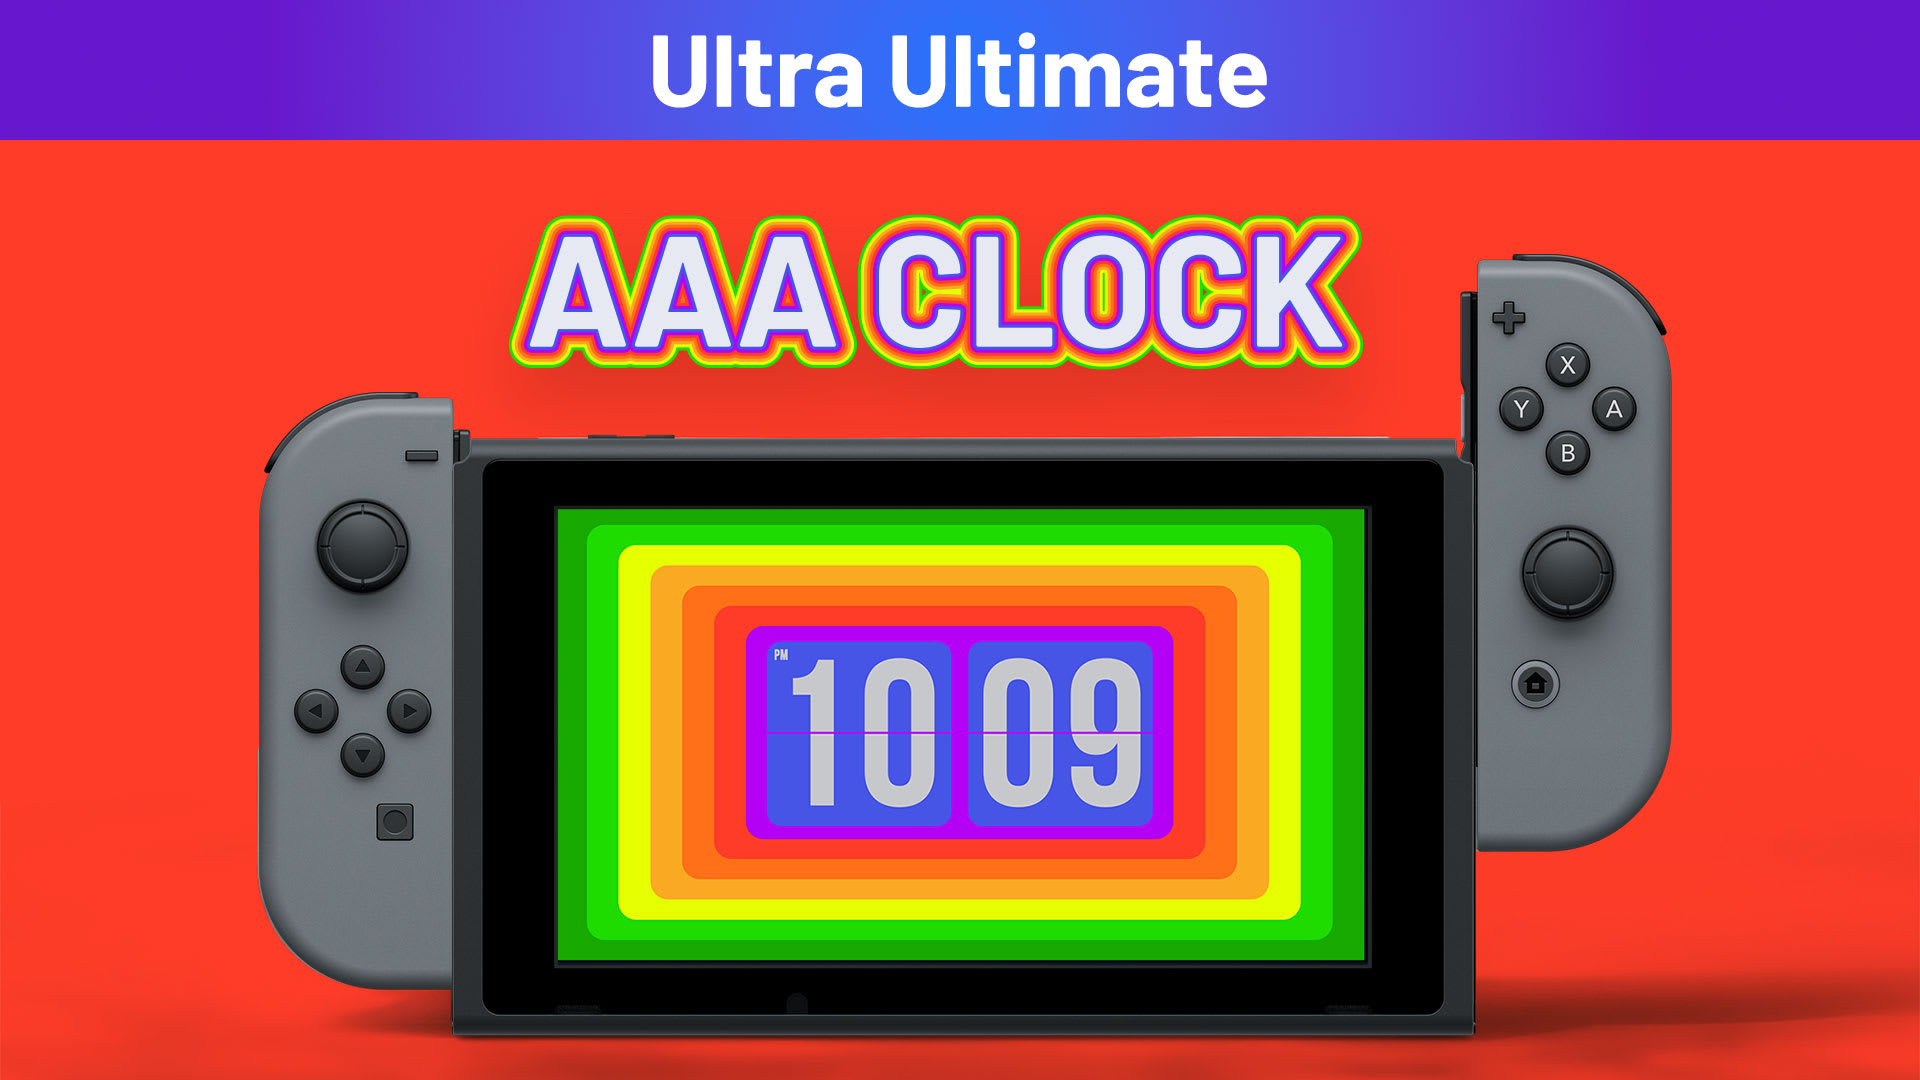 AAA Clock Ultra Ultimate 1